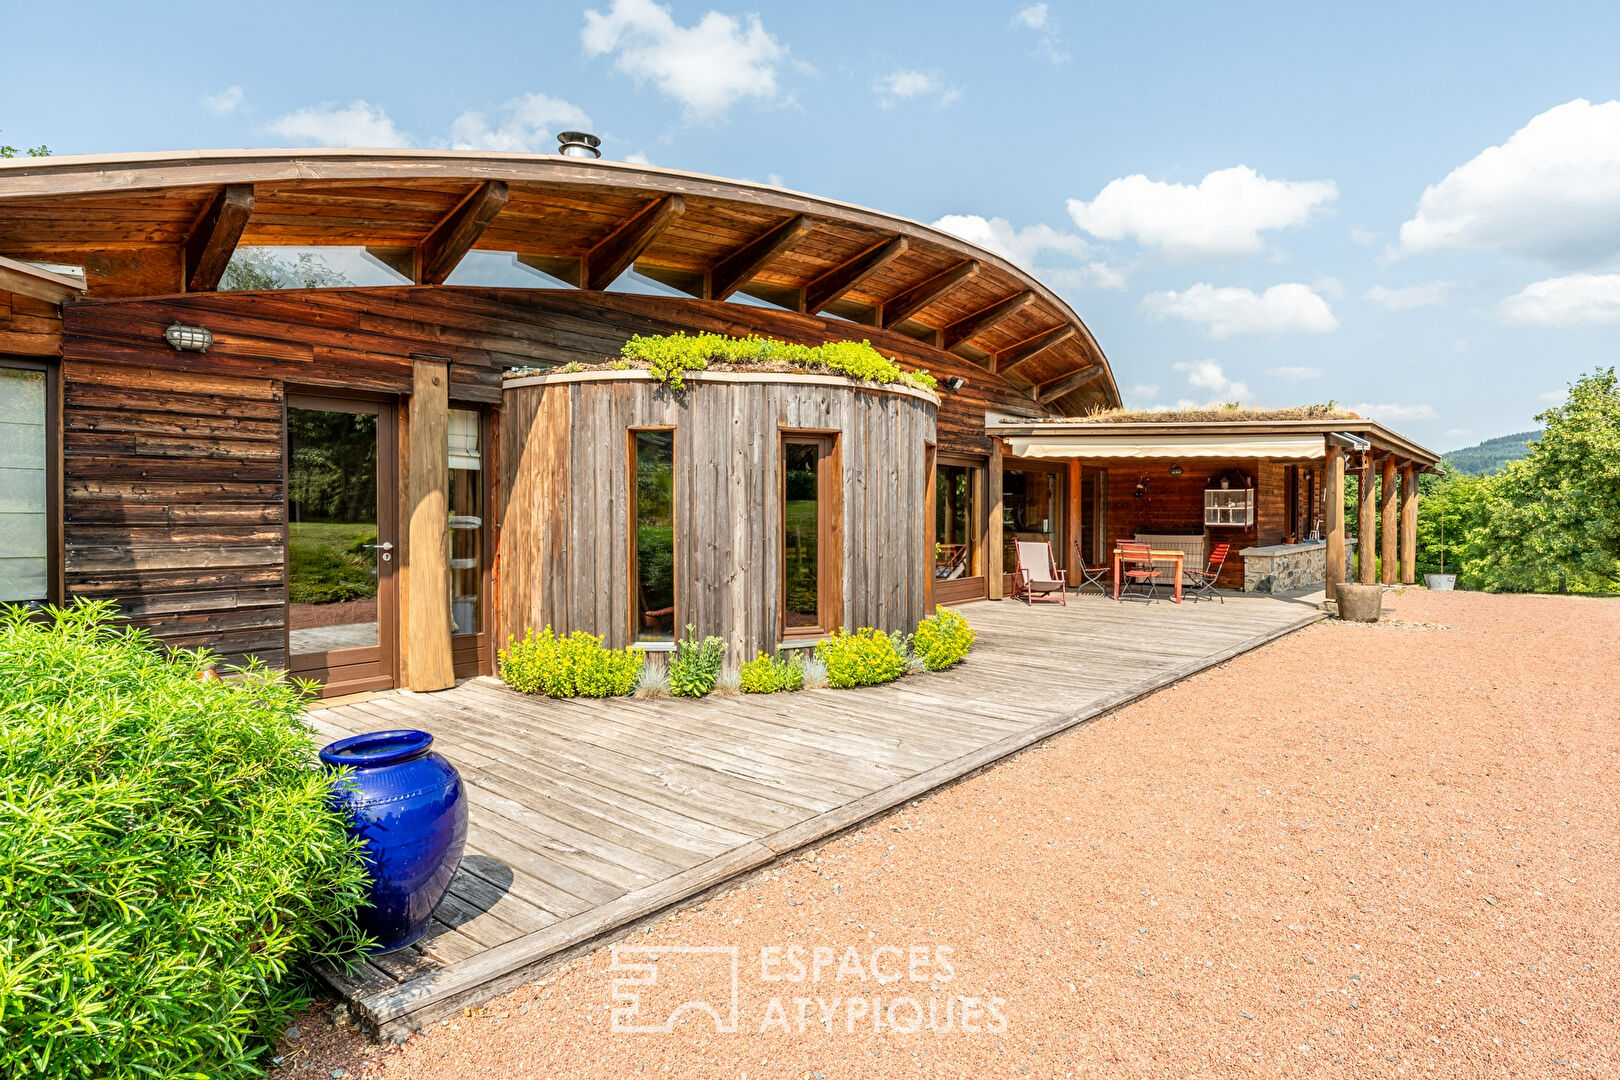 Maison d’architecte éco-responsable de plain pied dans son écrin de verdure avec terrains constructibles